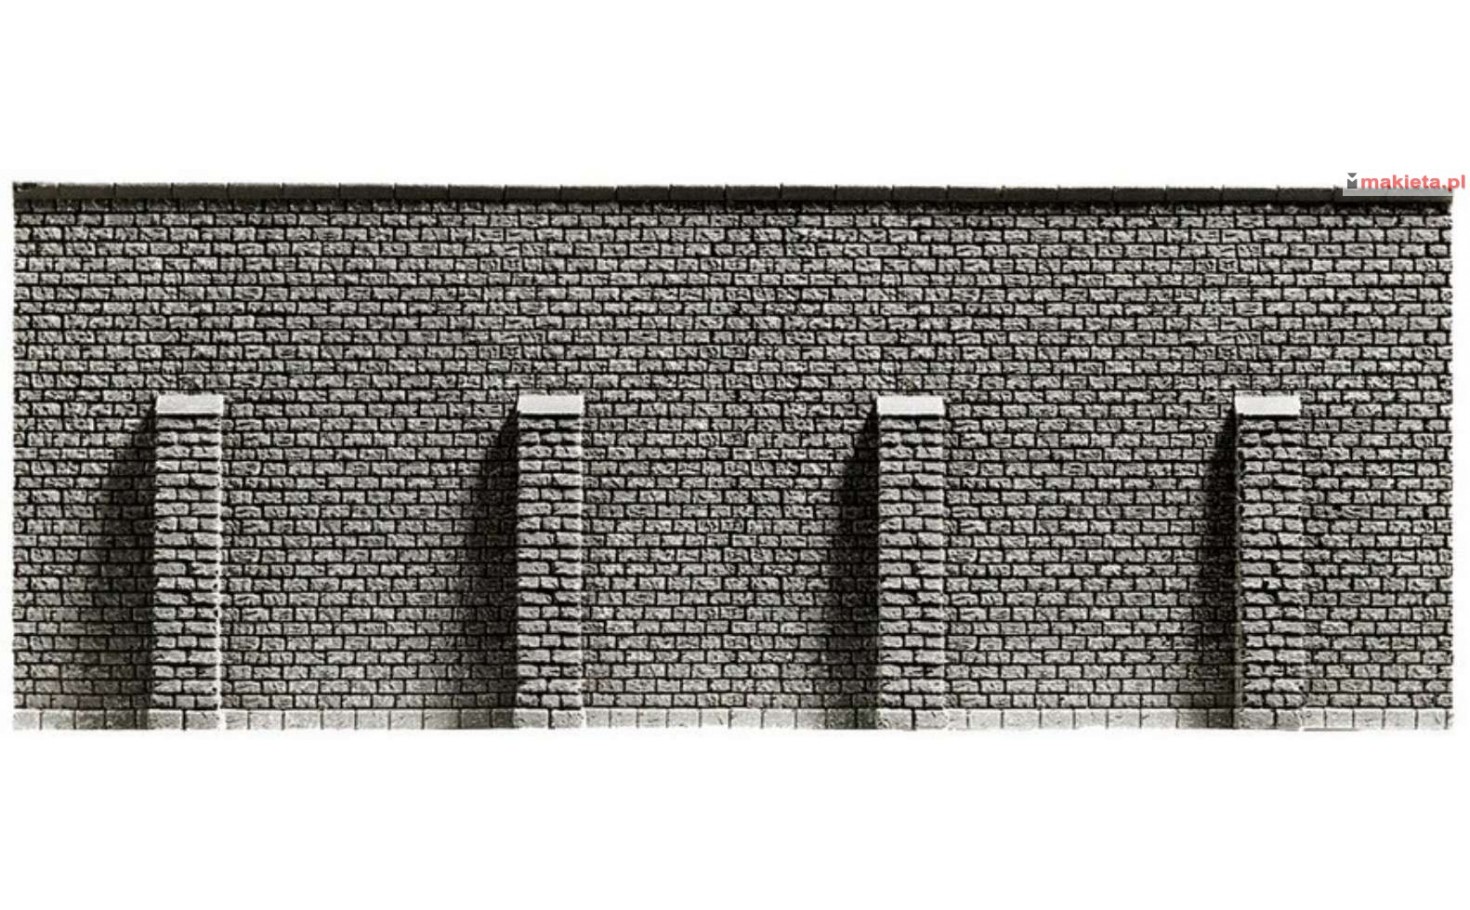 NOCH 34857. Mur oporowy z przyporami, 39,6 x 7,4 cm, skala N 1:160